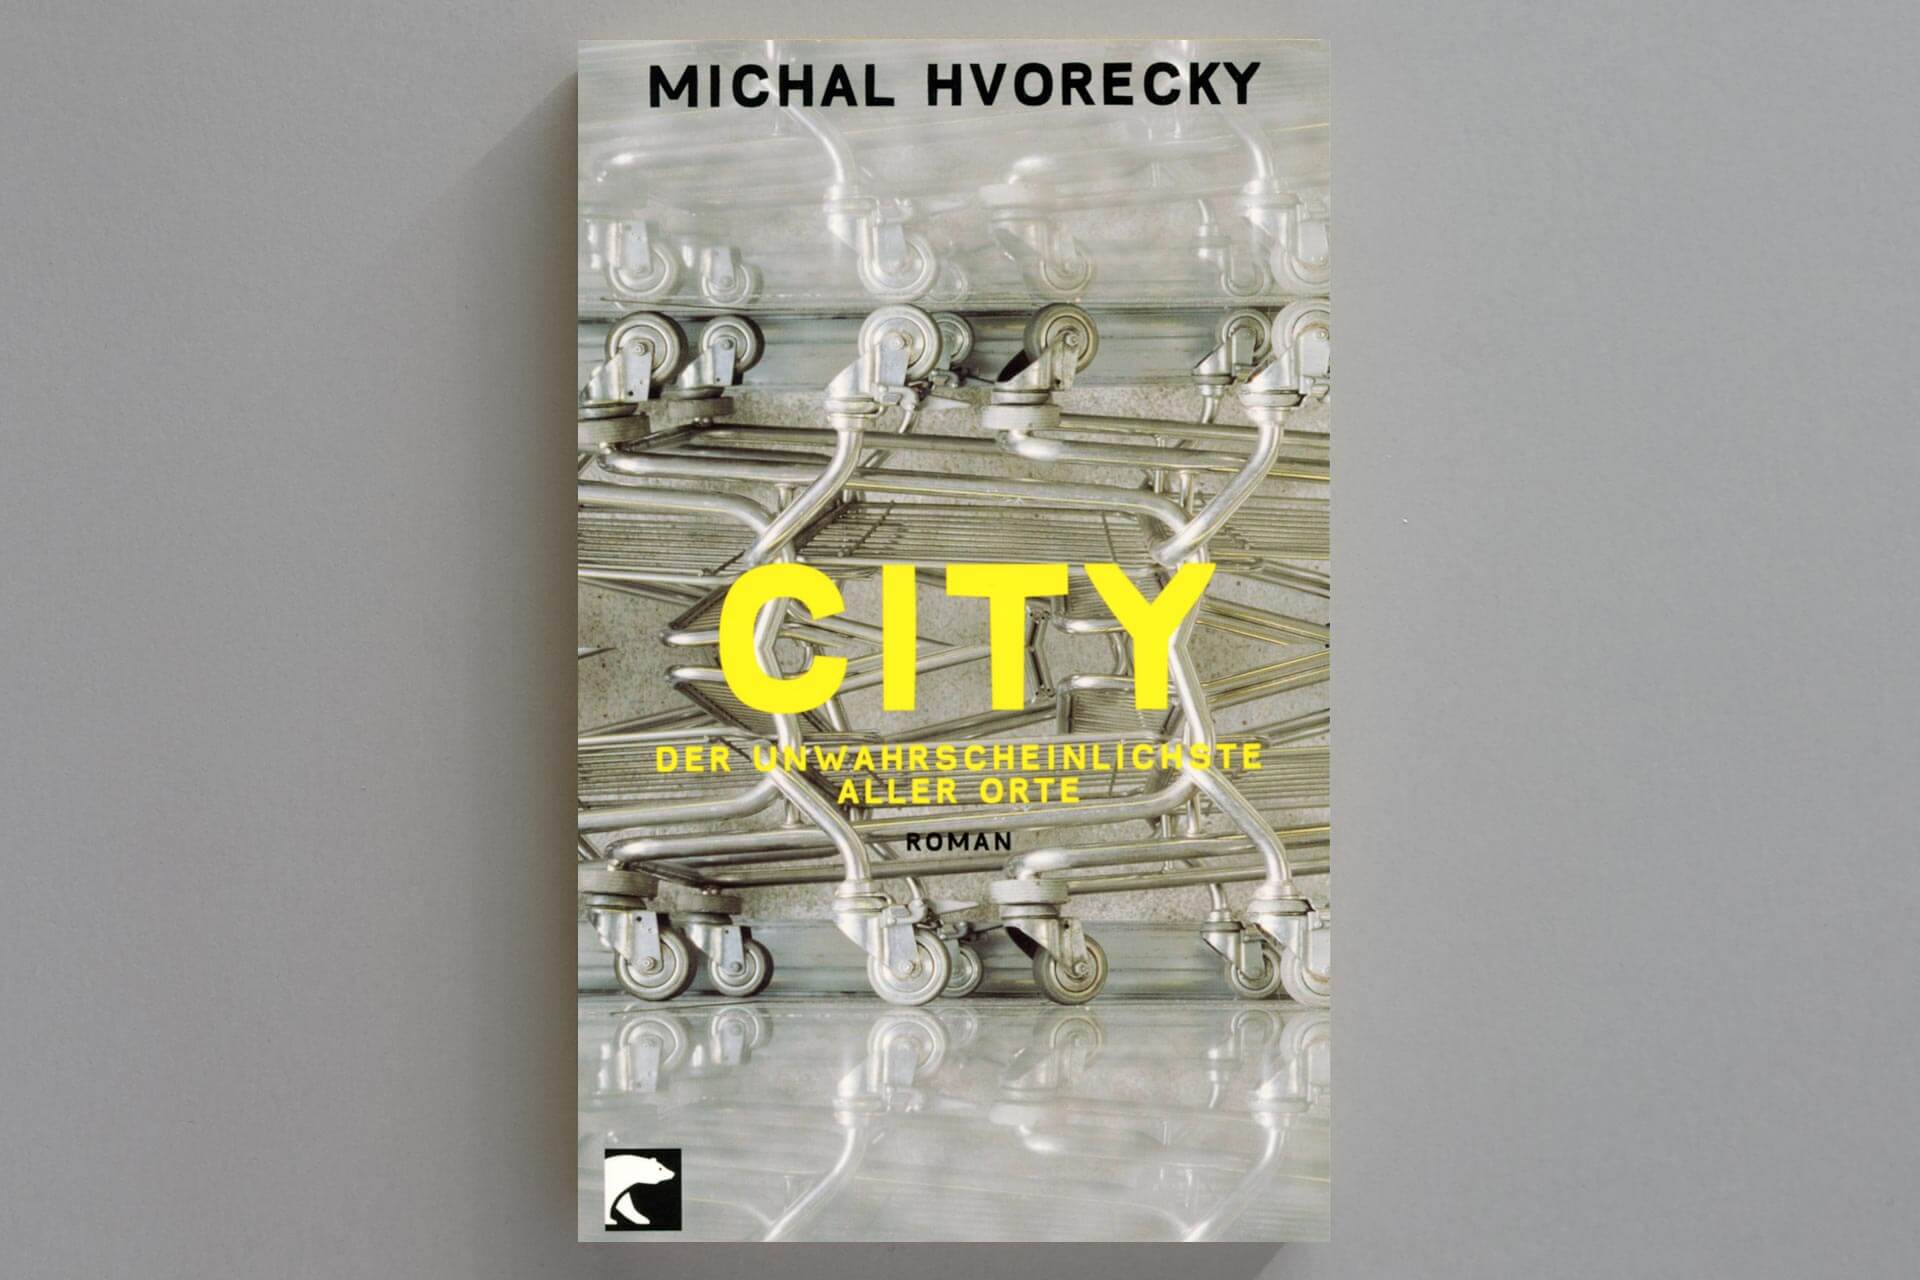 Abbildung einer Buchcover-Gestaltung für Michal Hvorecky’s „City“. Gelbe Typo auf Foto mit ornamentalem Einkaufswagen-Motiv.